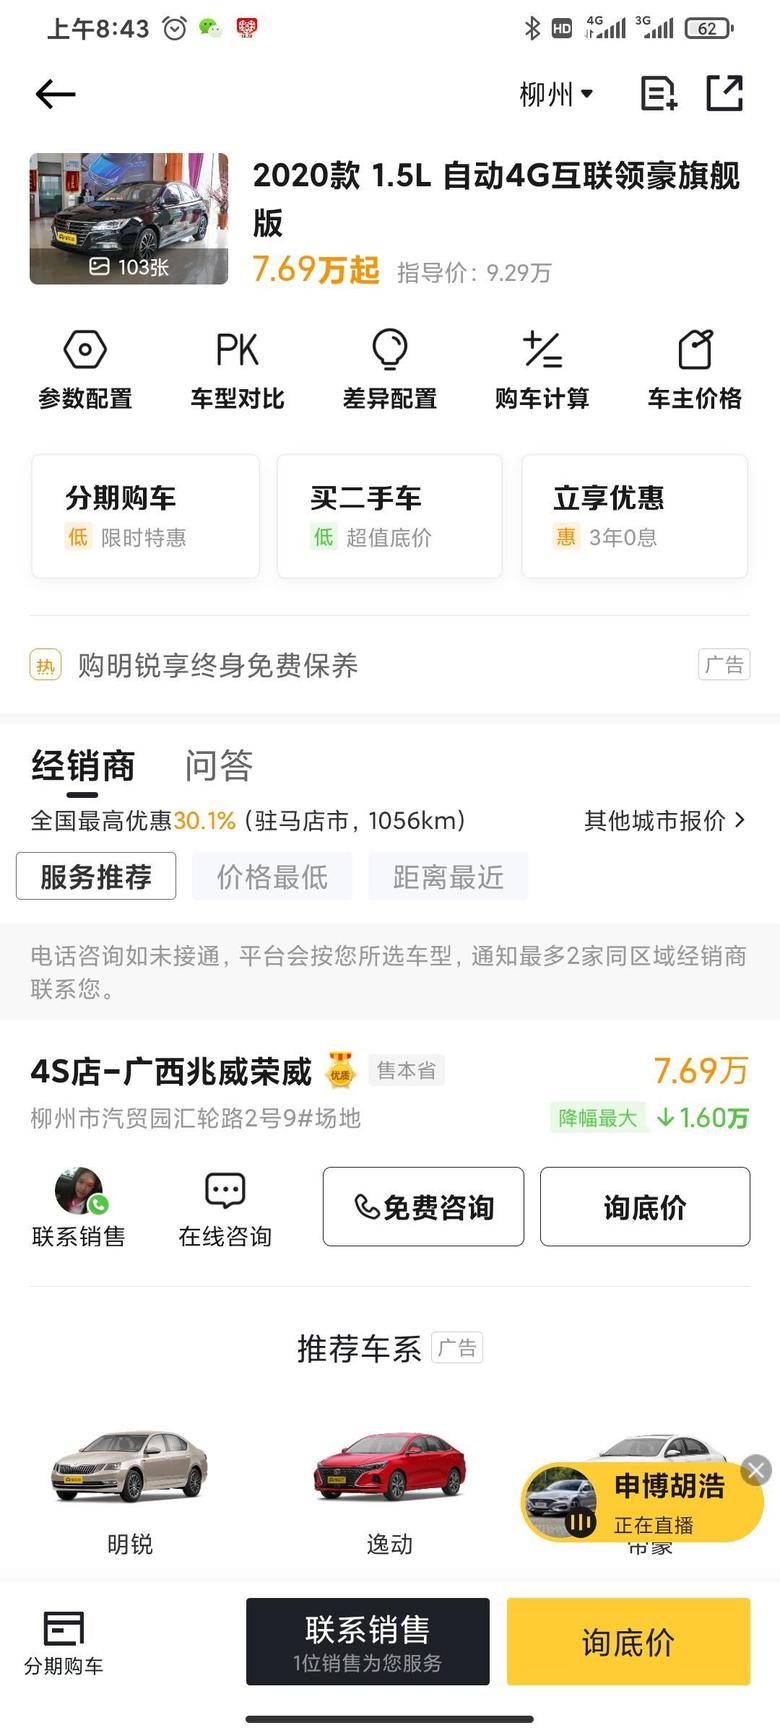 荣威i5 柳州的落地价是多少，有人买过吗？